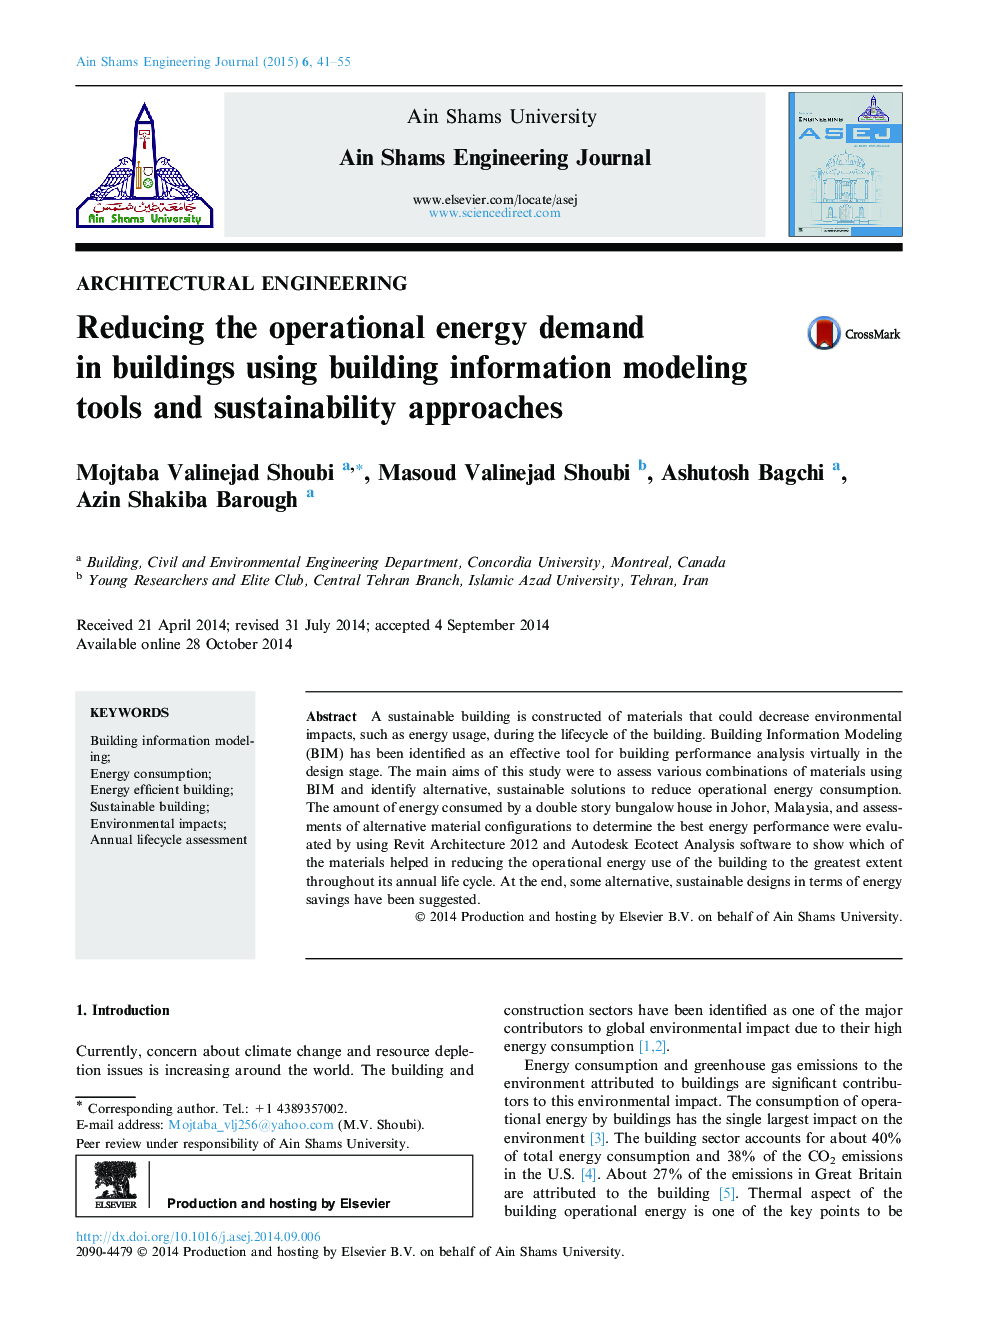 کاهش تقاضای انرژی عملیاتی در ساختمان ها با استفاده از ابزارهای مدل سازی اطلاعات و روش های پایداری 